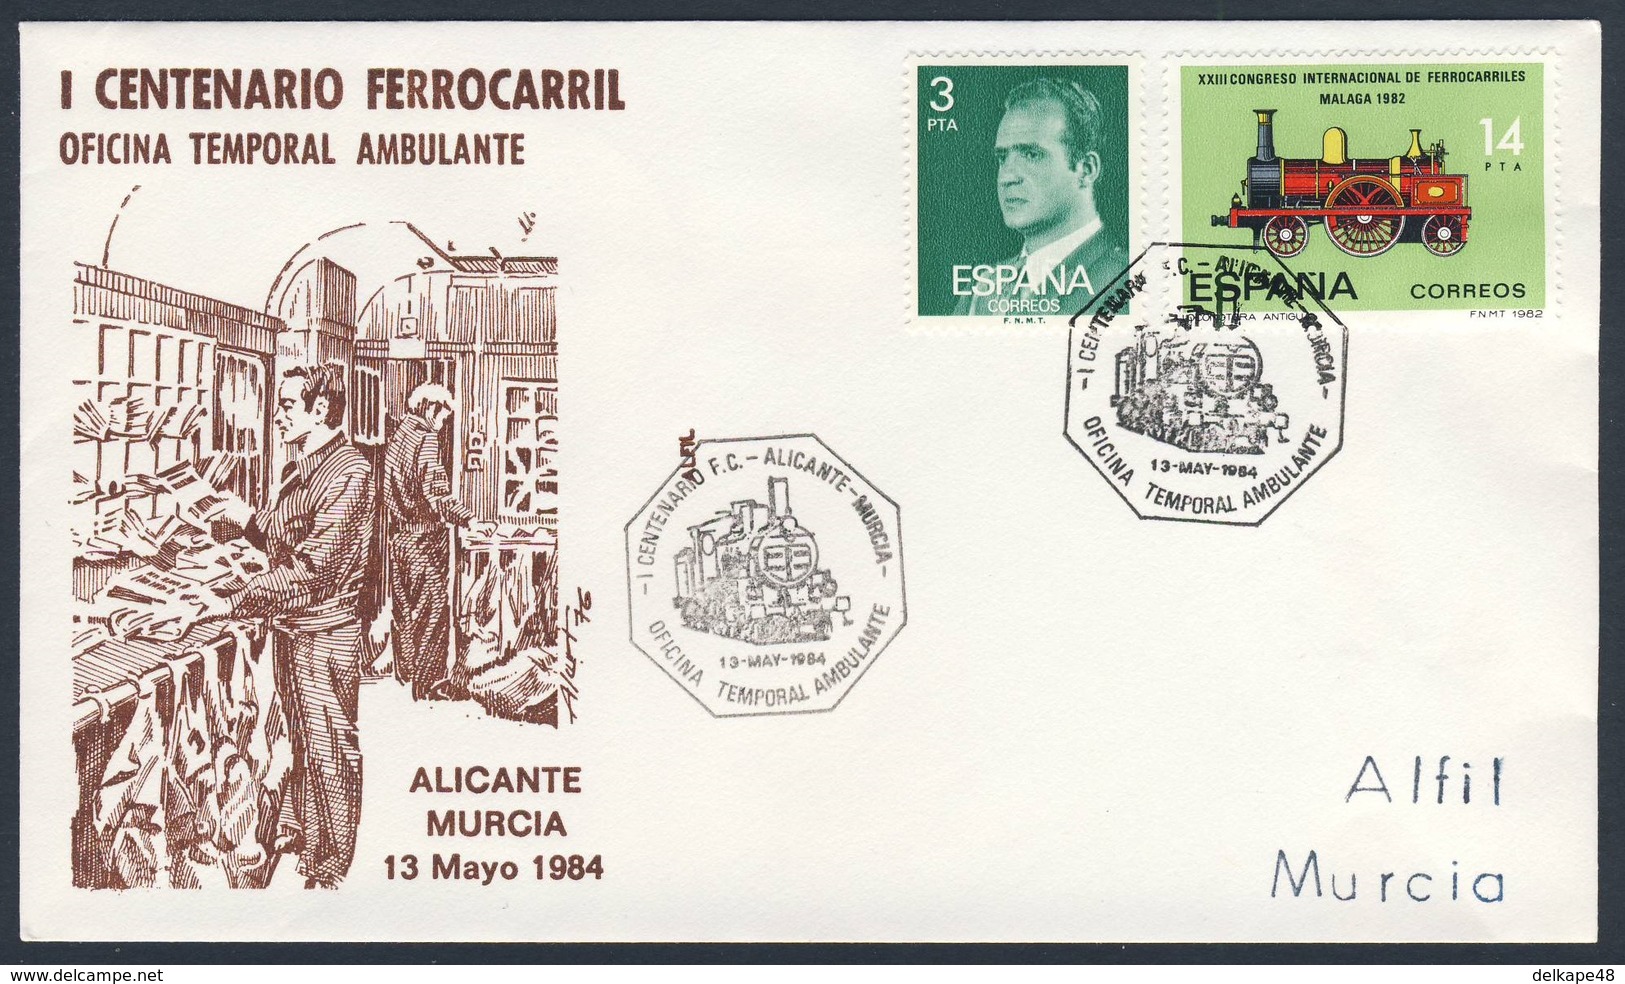 Spain Espana 1984 Cover Brief Envelope - I Cent. Ferrocarril Oficina Temporal Ambulante, Alicante - Murcia - Treinen